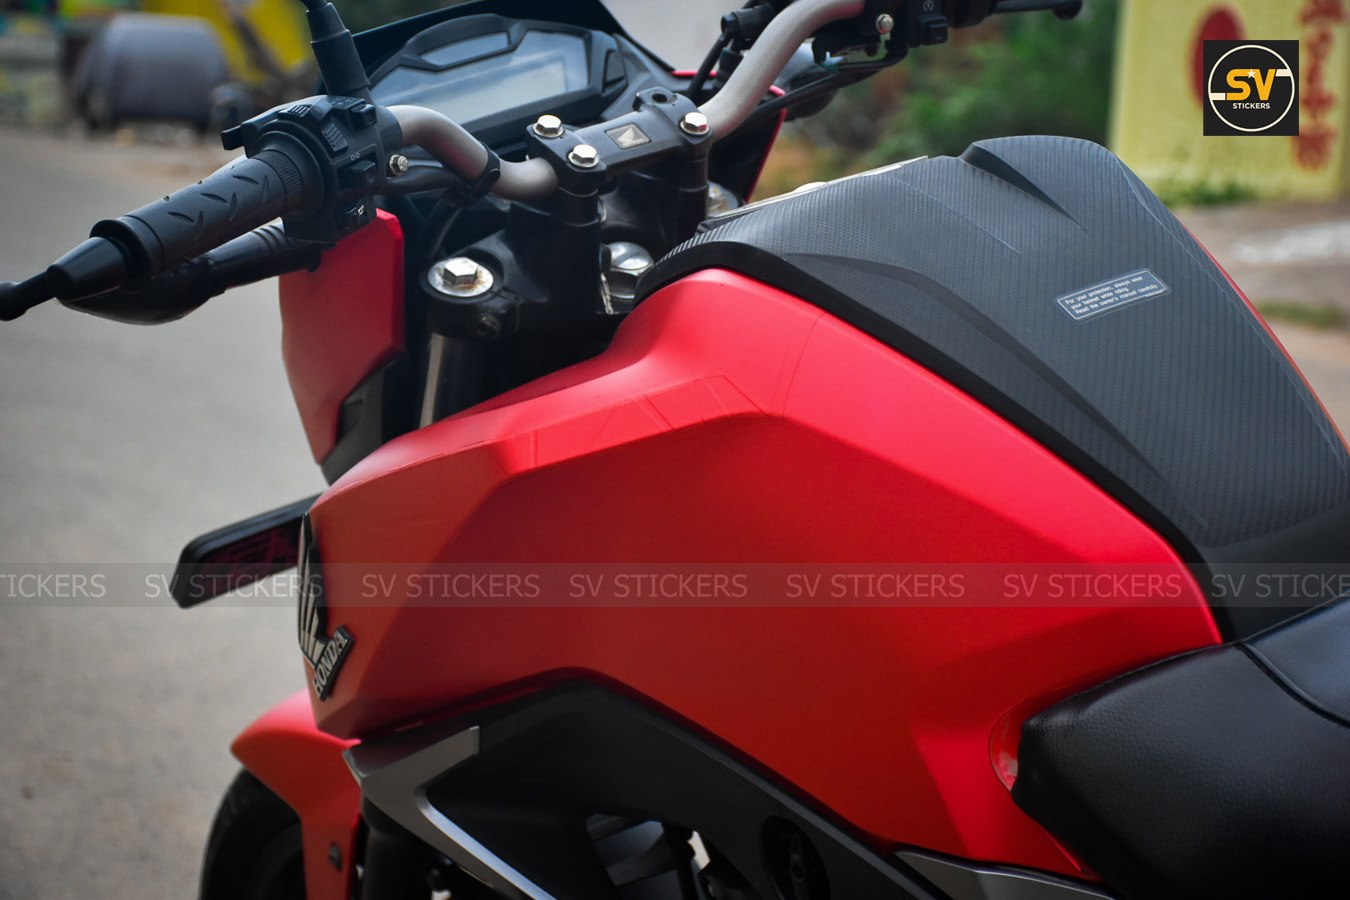 Meet Matte Metallic Red Honda Hornet 160 by SV Stickers - photo